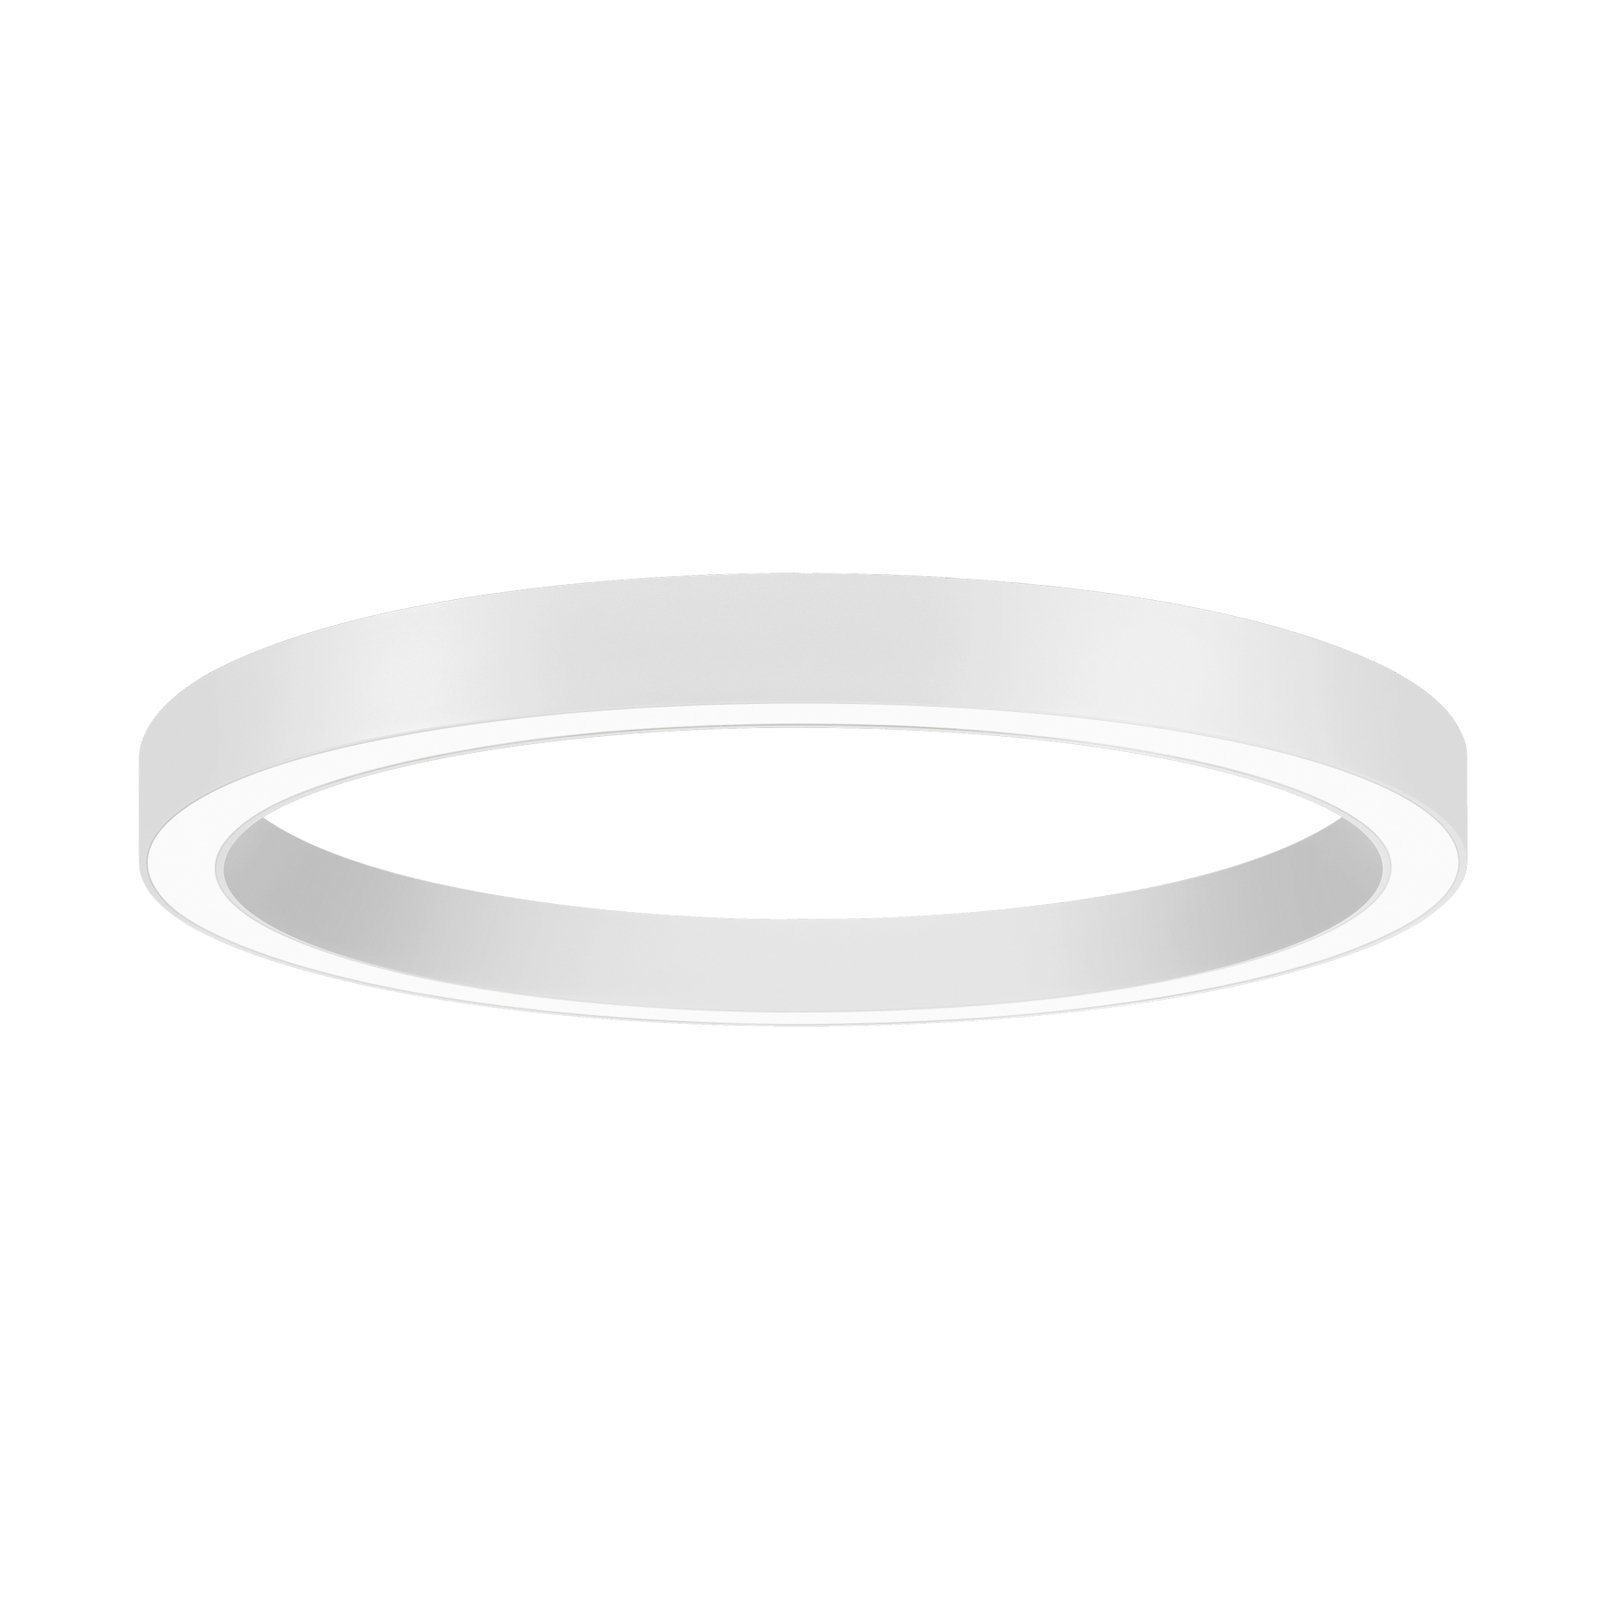 BRUMBERG Biro Circle Ring,  Ø 60 cm, Casambi, weiß, 840